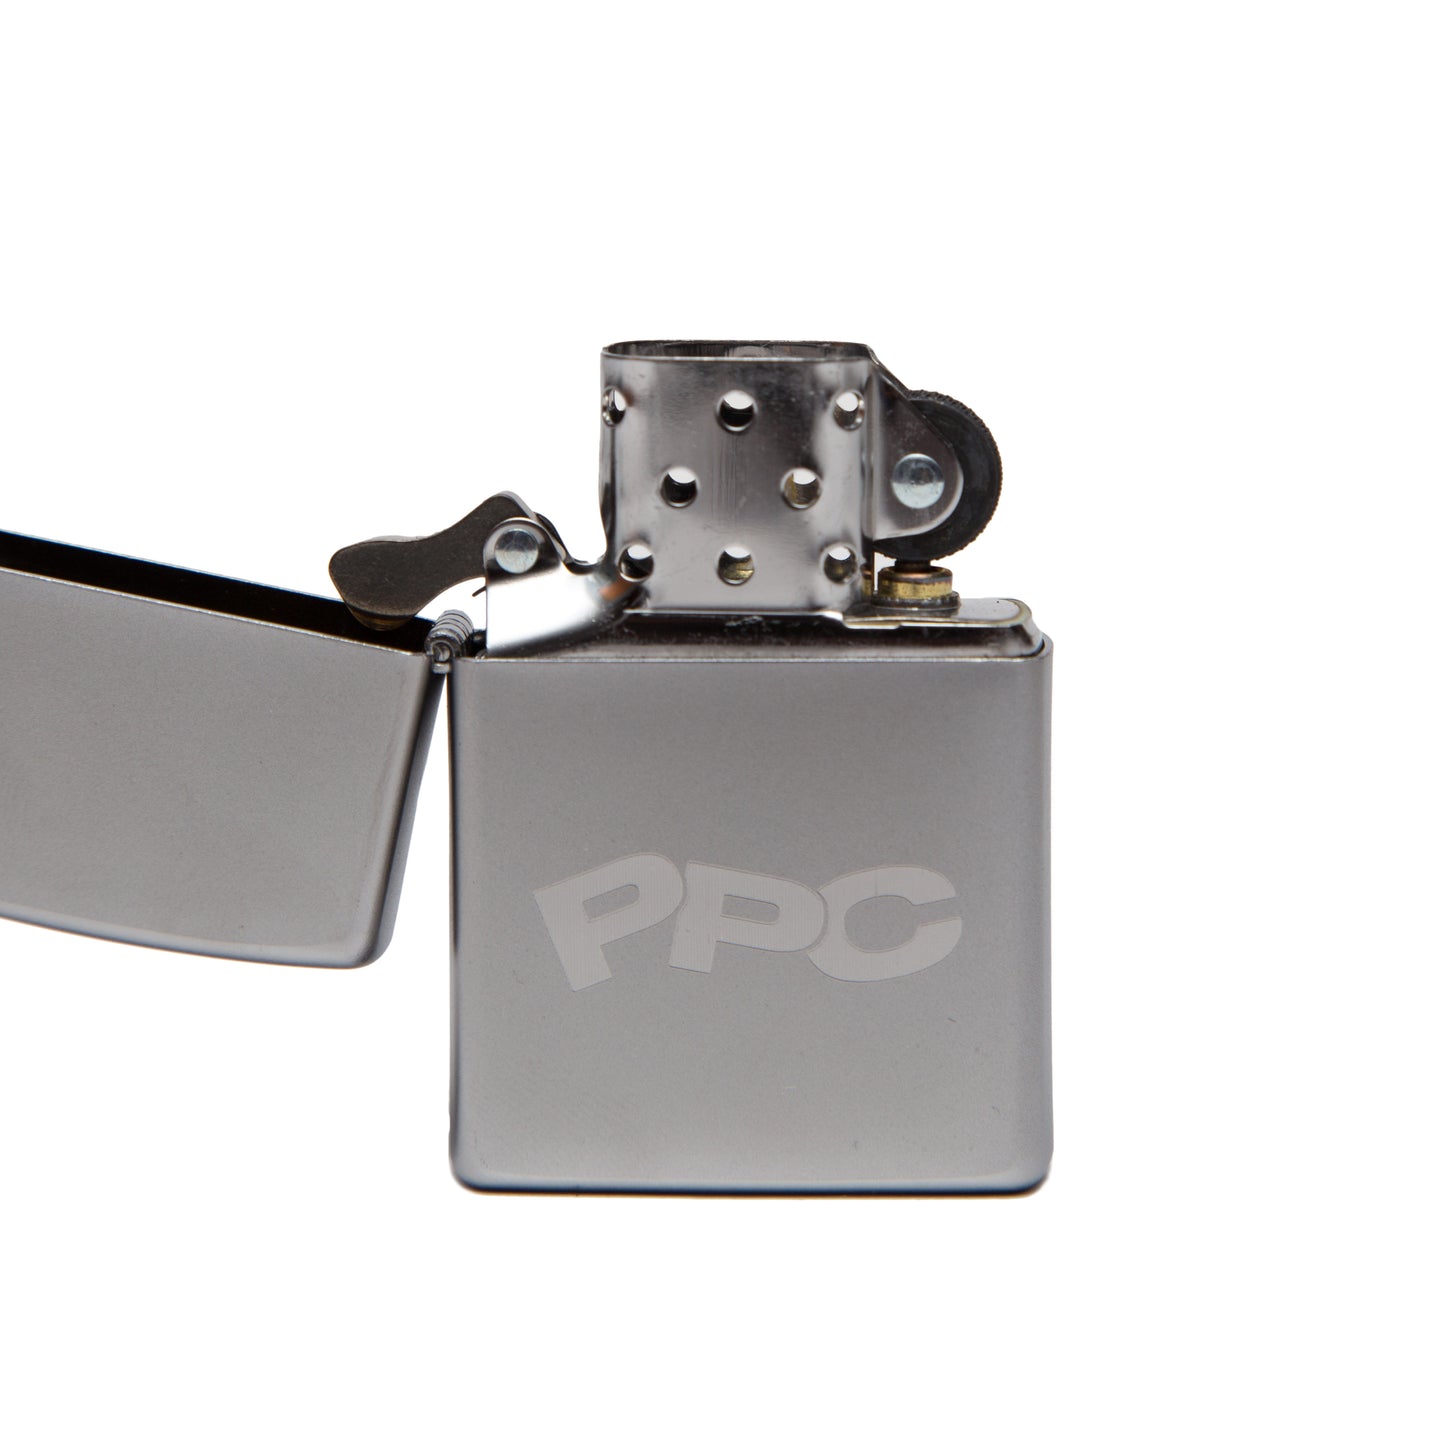 PPC Steel Custom Zippo